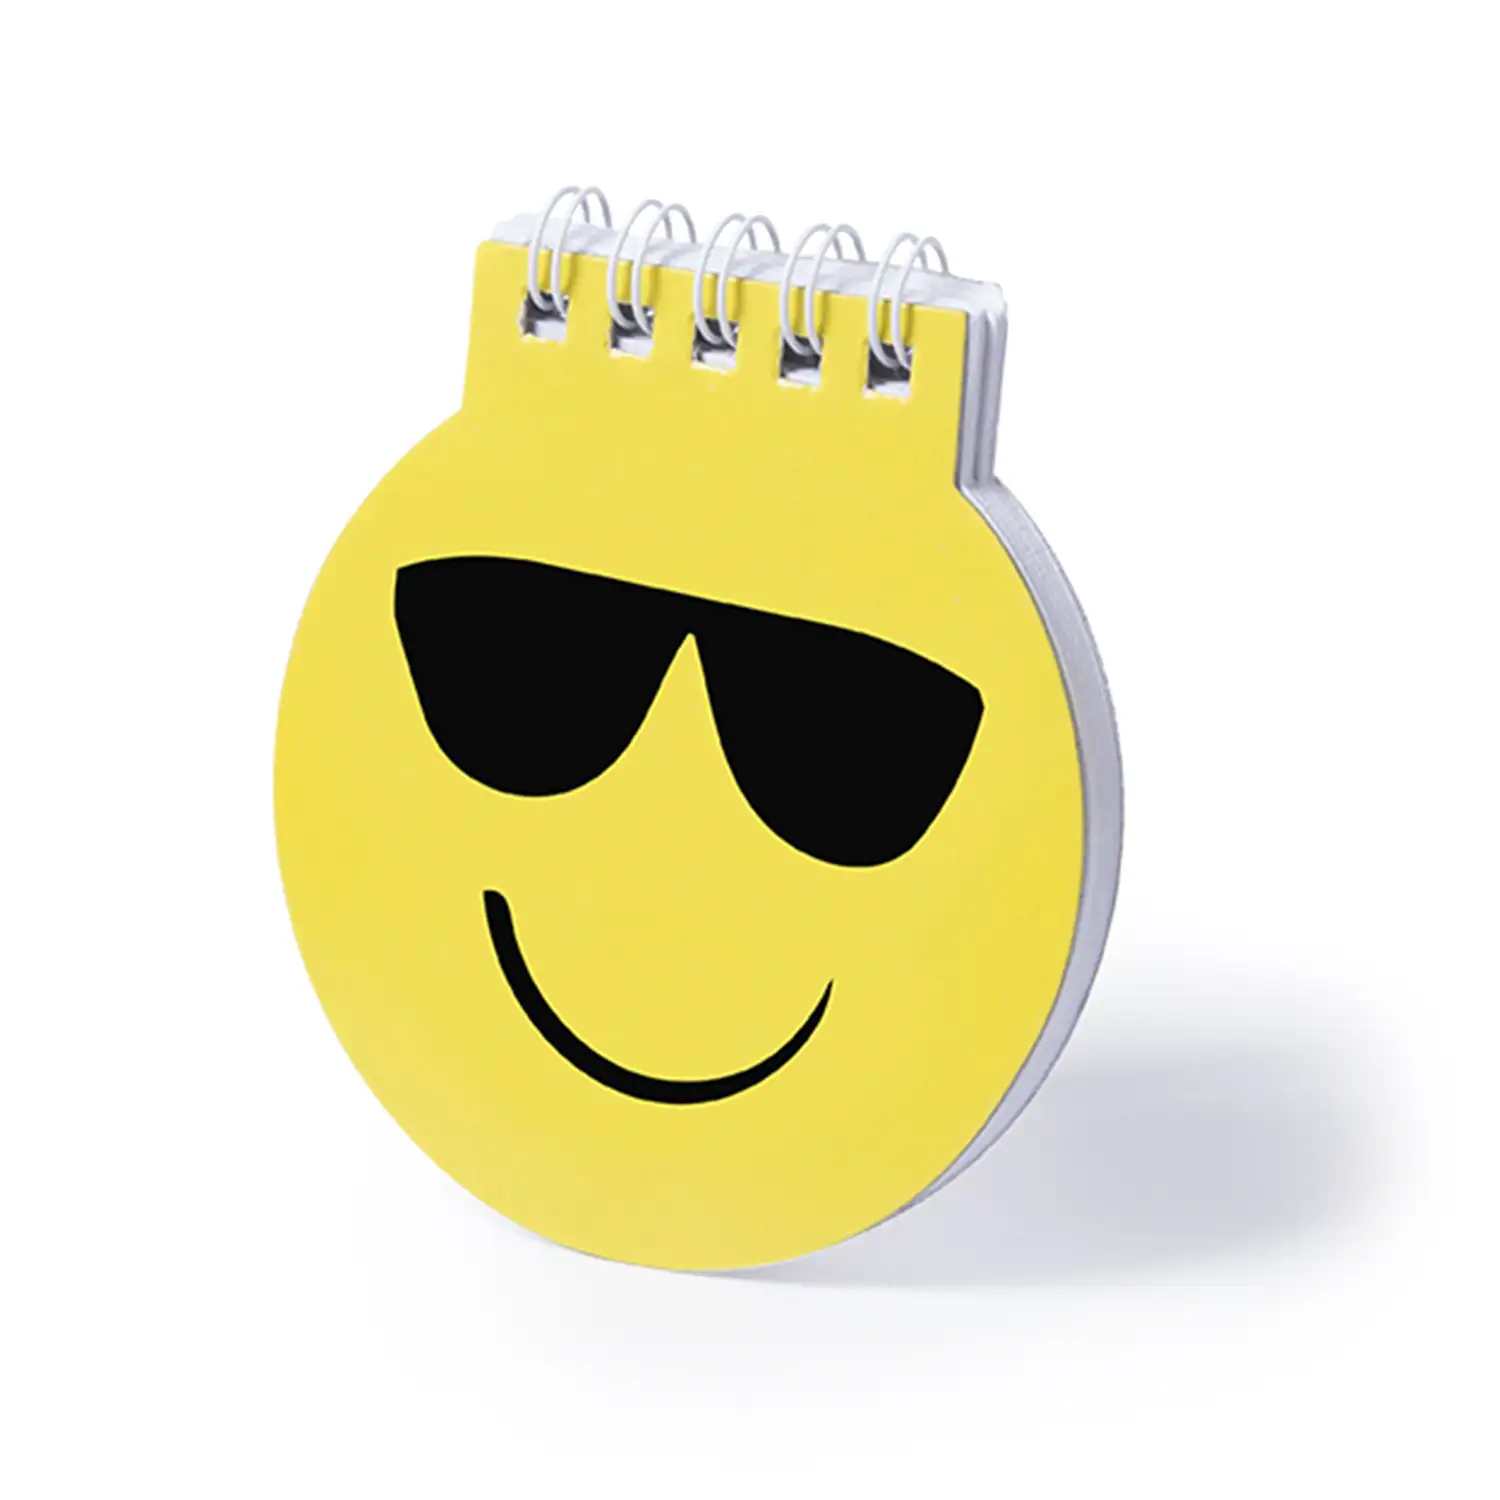 Winlon, libreta diseño emoji con gafas de sol. 40 hojas lisas.